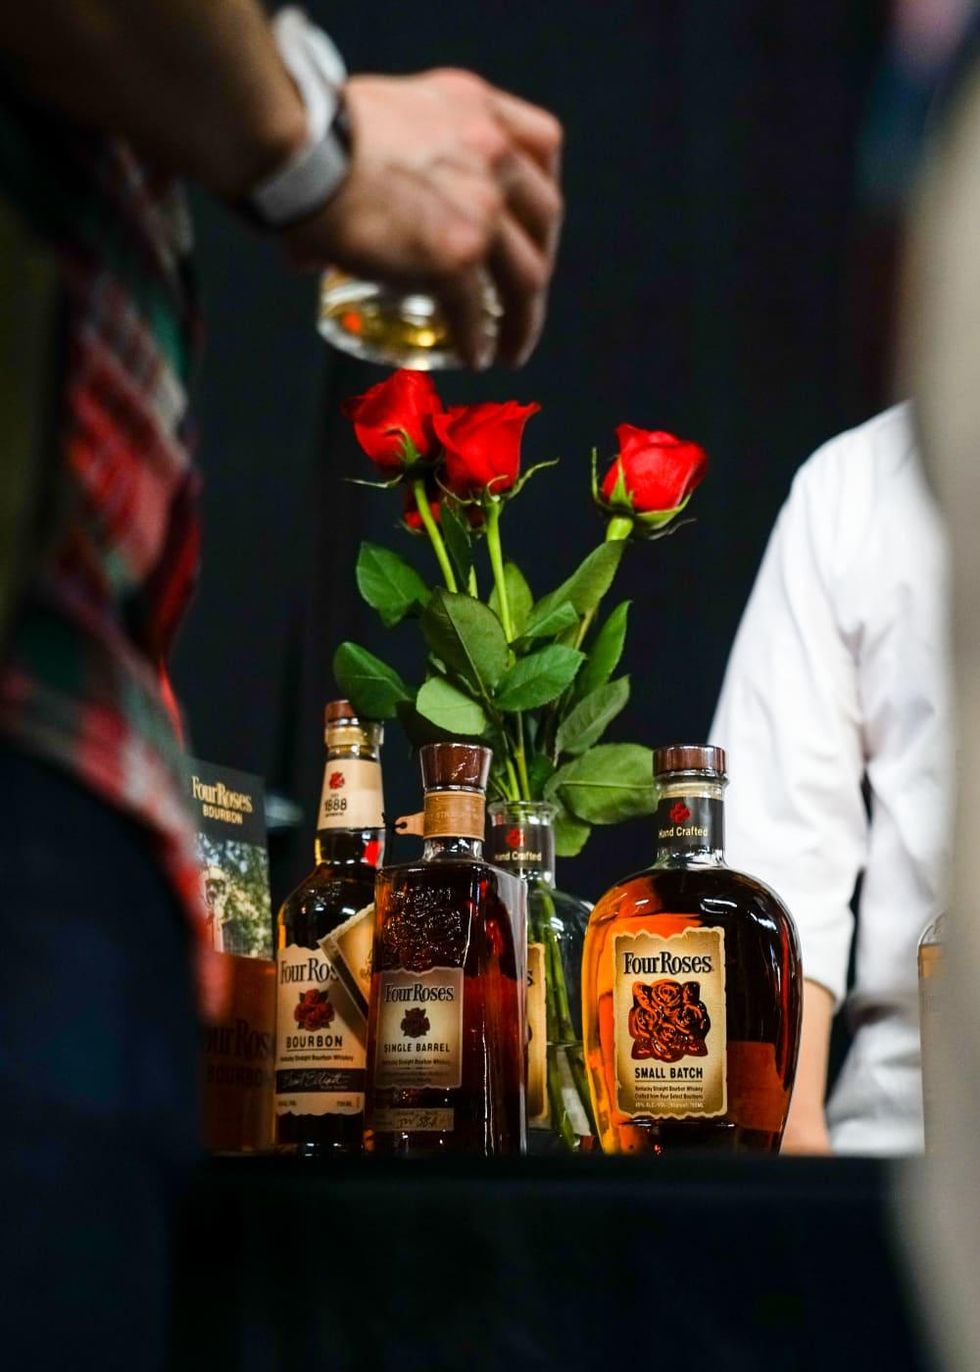 Four Roses bourbon bottles